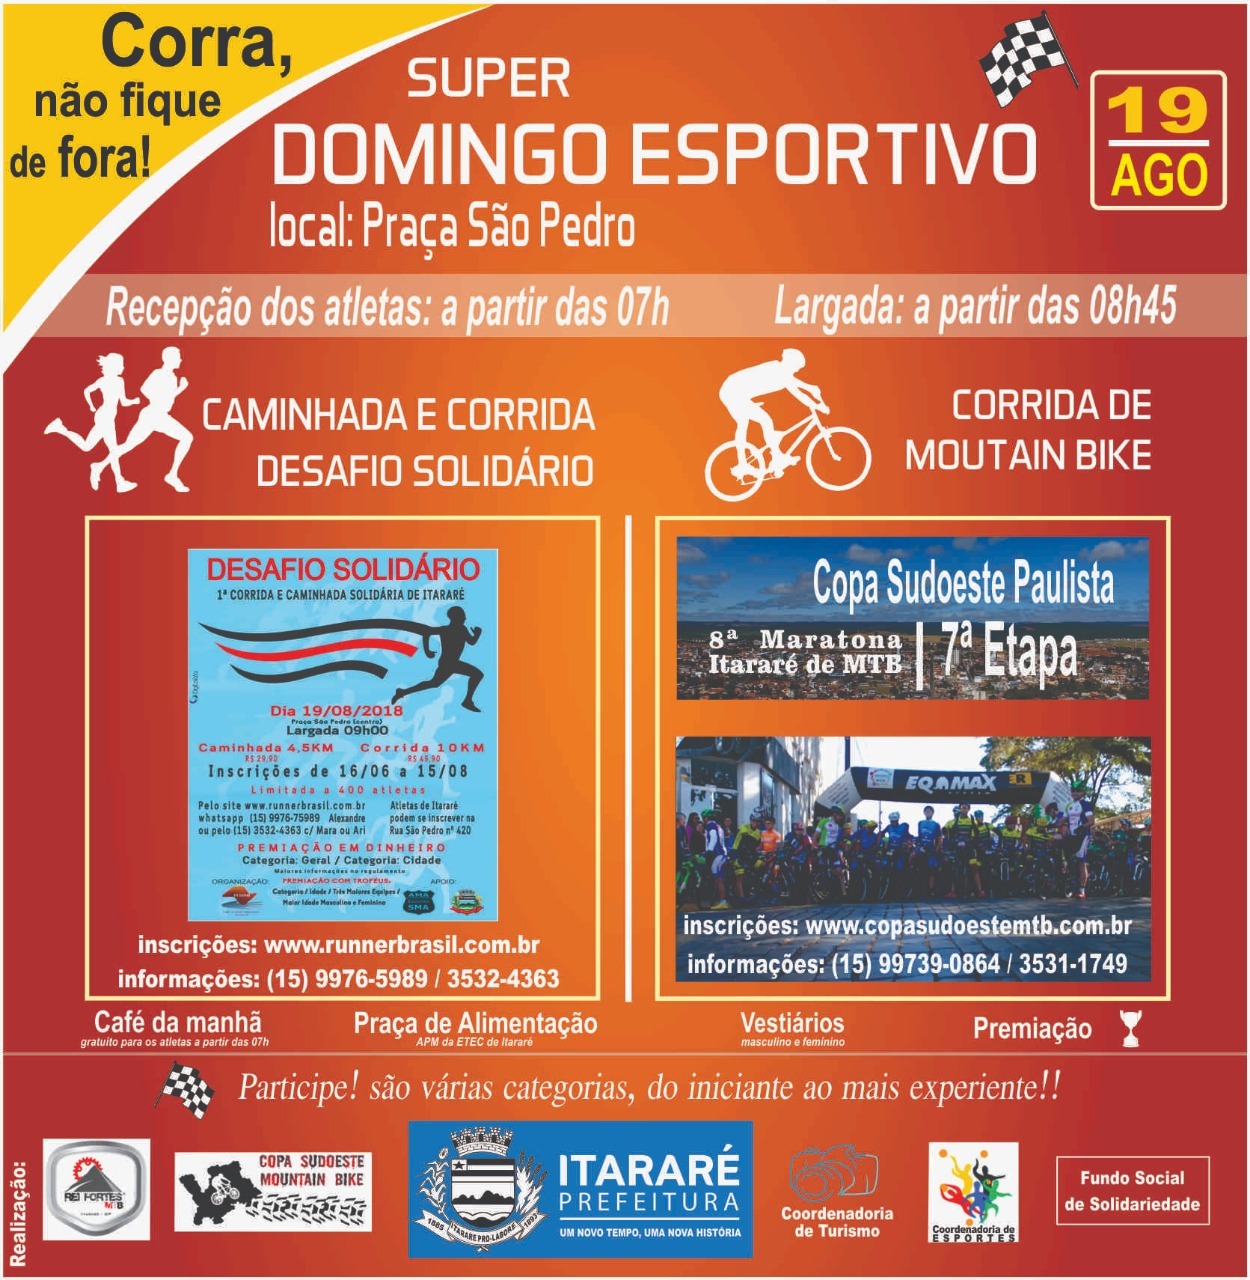 Itararé (SP) 125 anos: Prefeitura promove 1º Super Domingo Esportivo